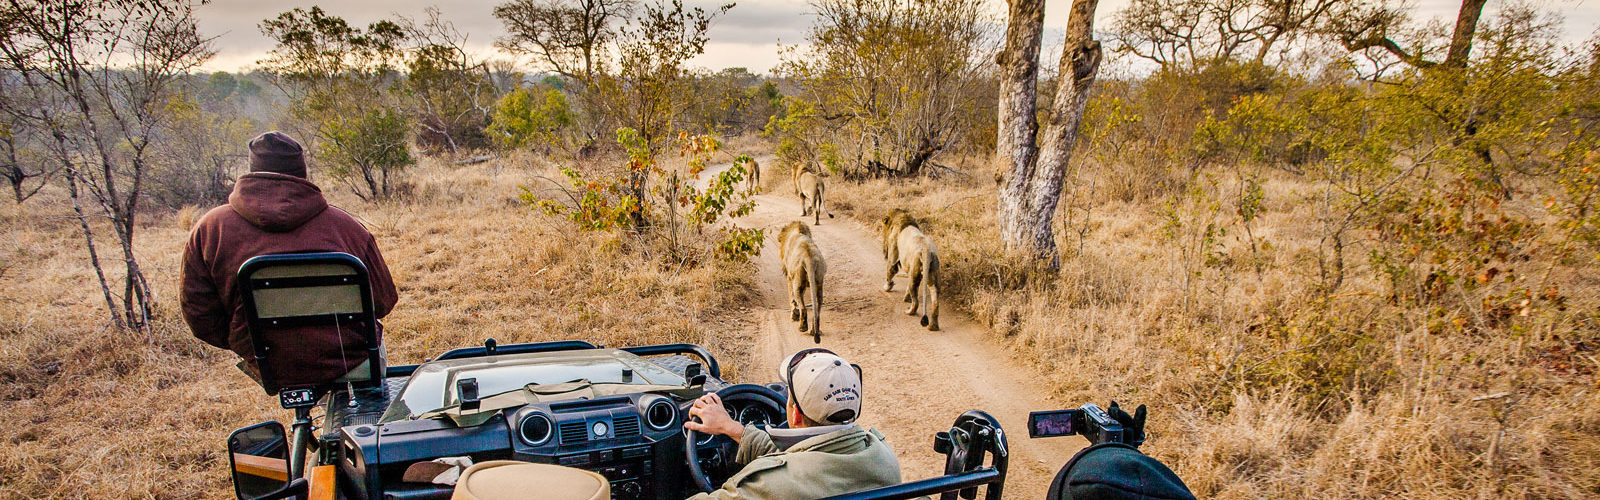 Safari jeep and lions, Sabi Sabi, South Africa